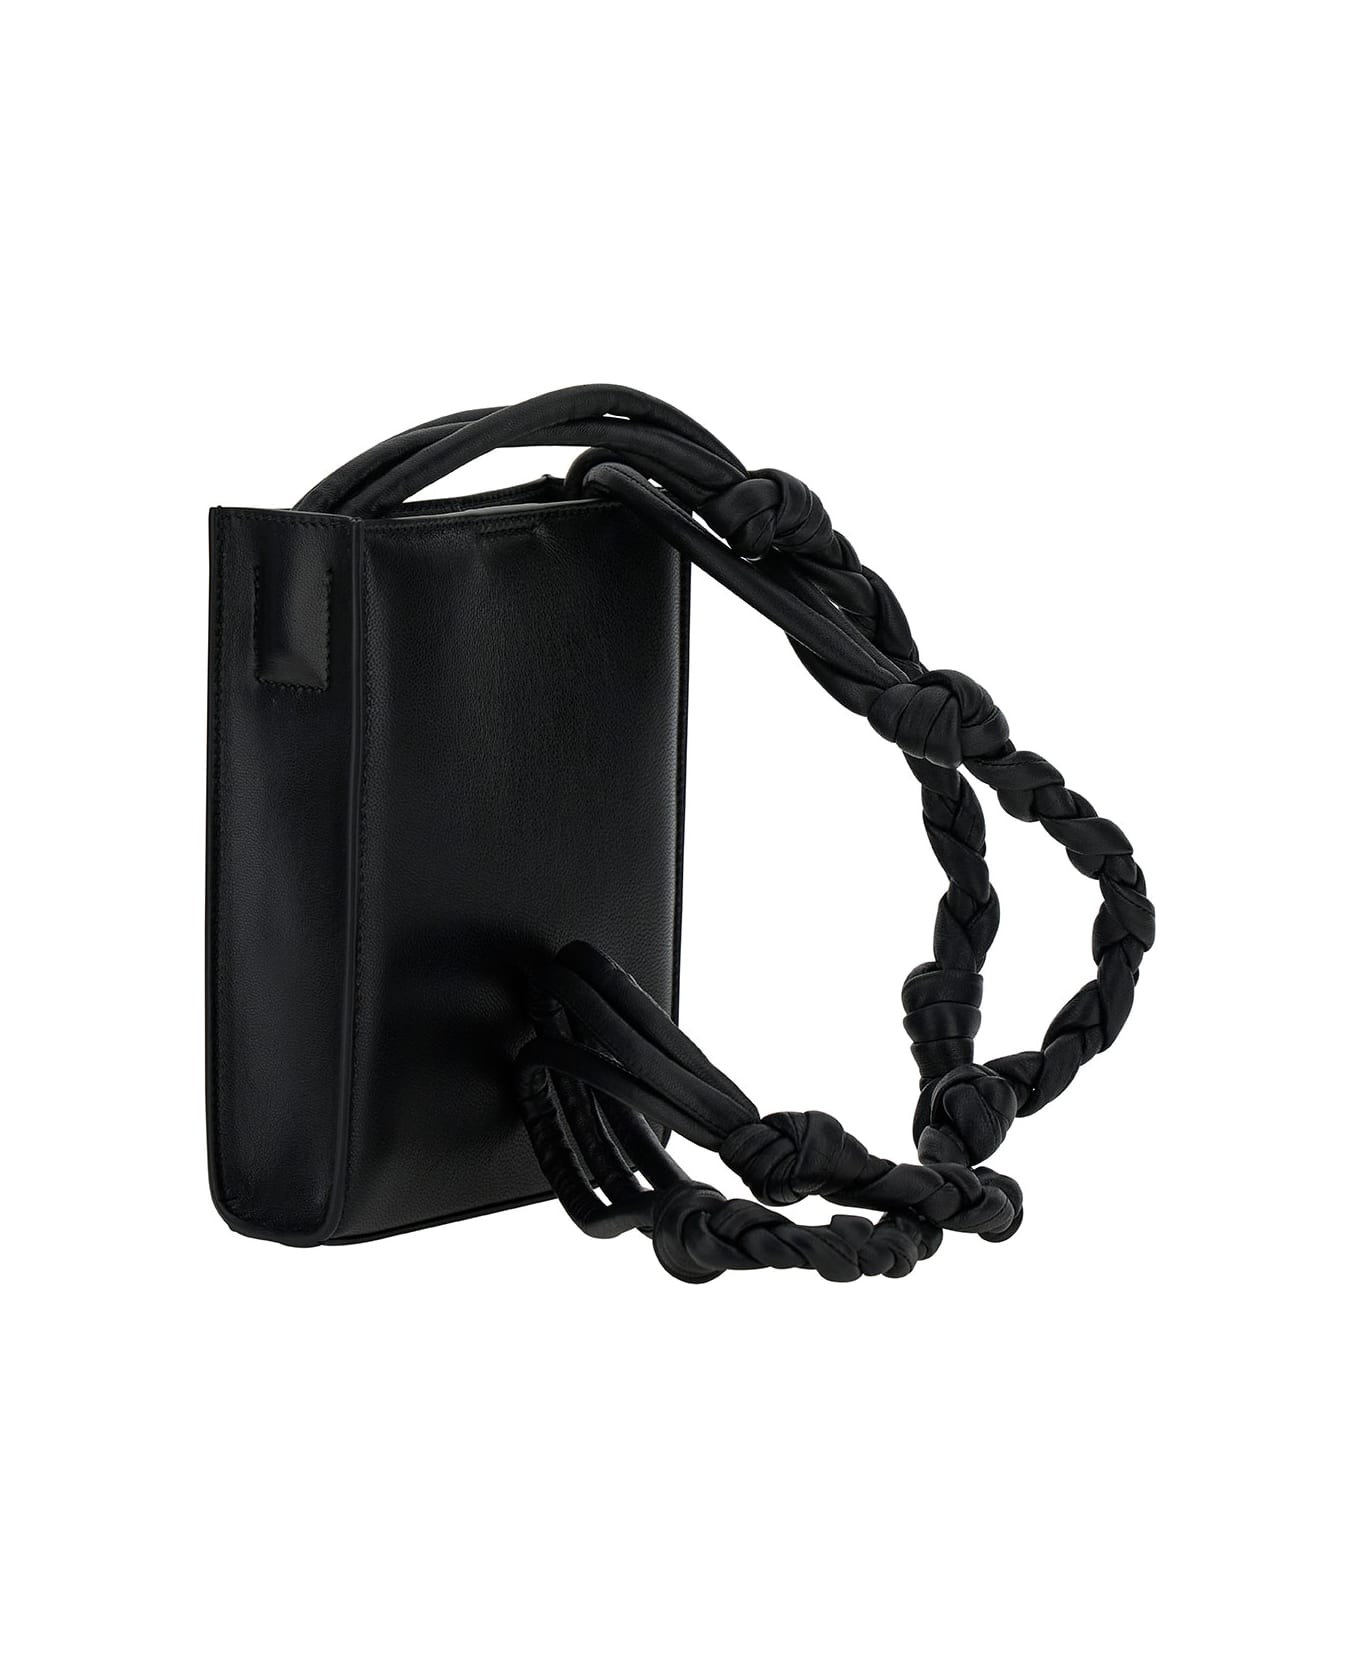 Jil Sander 'tangle Small' Black Shoulder Bag With Embossed Logo In Leather Man - Black